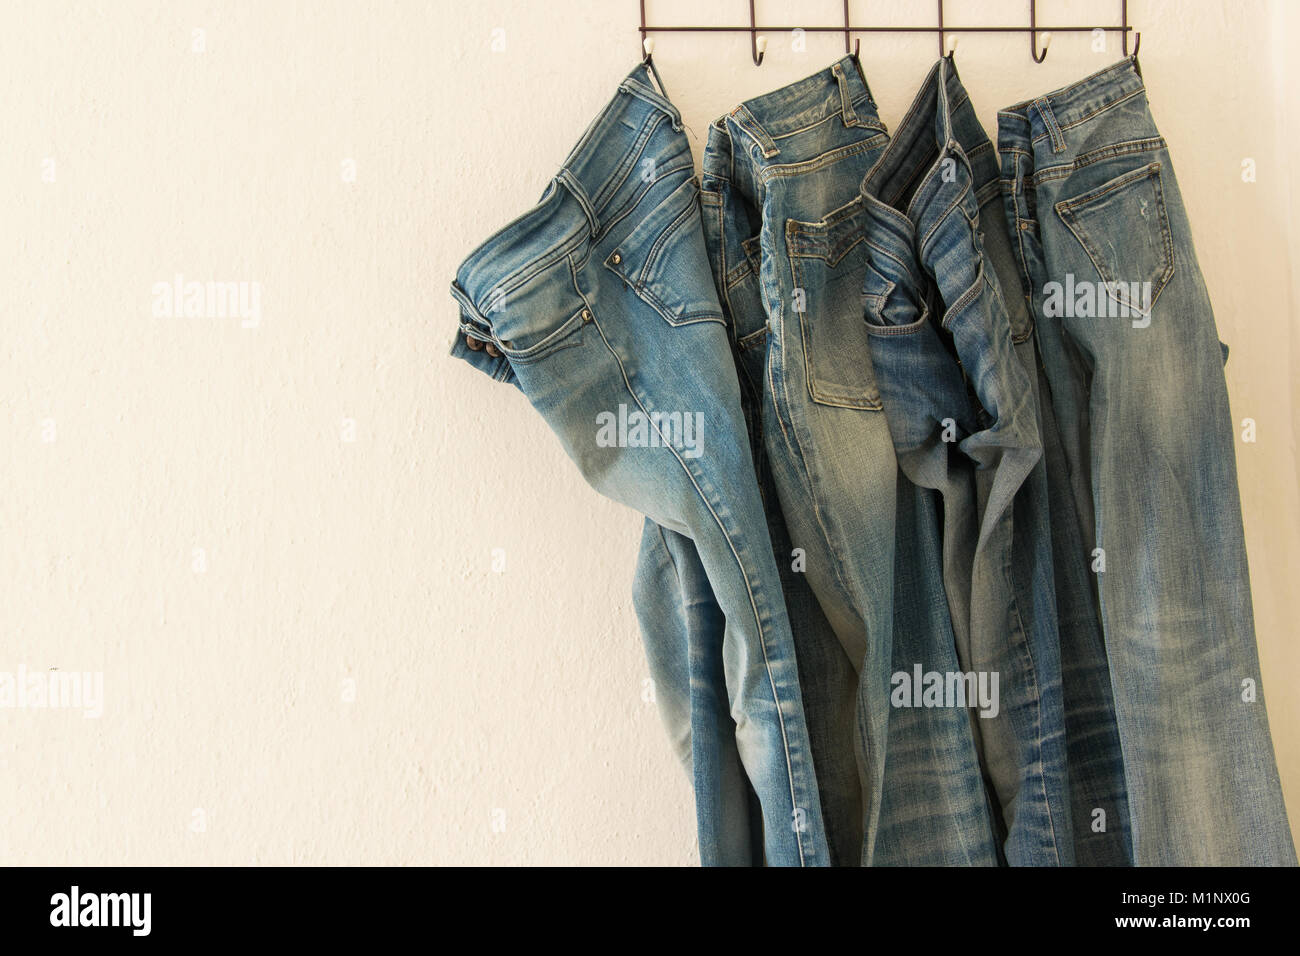 Shop display jeans clothing on fotografías e imágenes de alta resolución -  Página 4 - Alamy